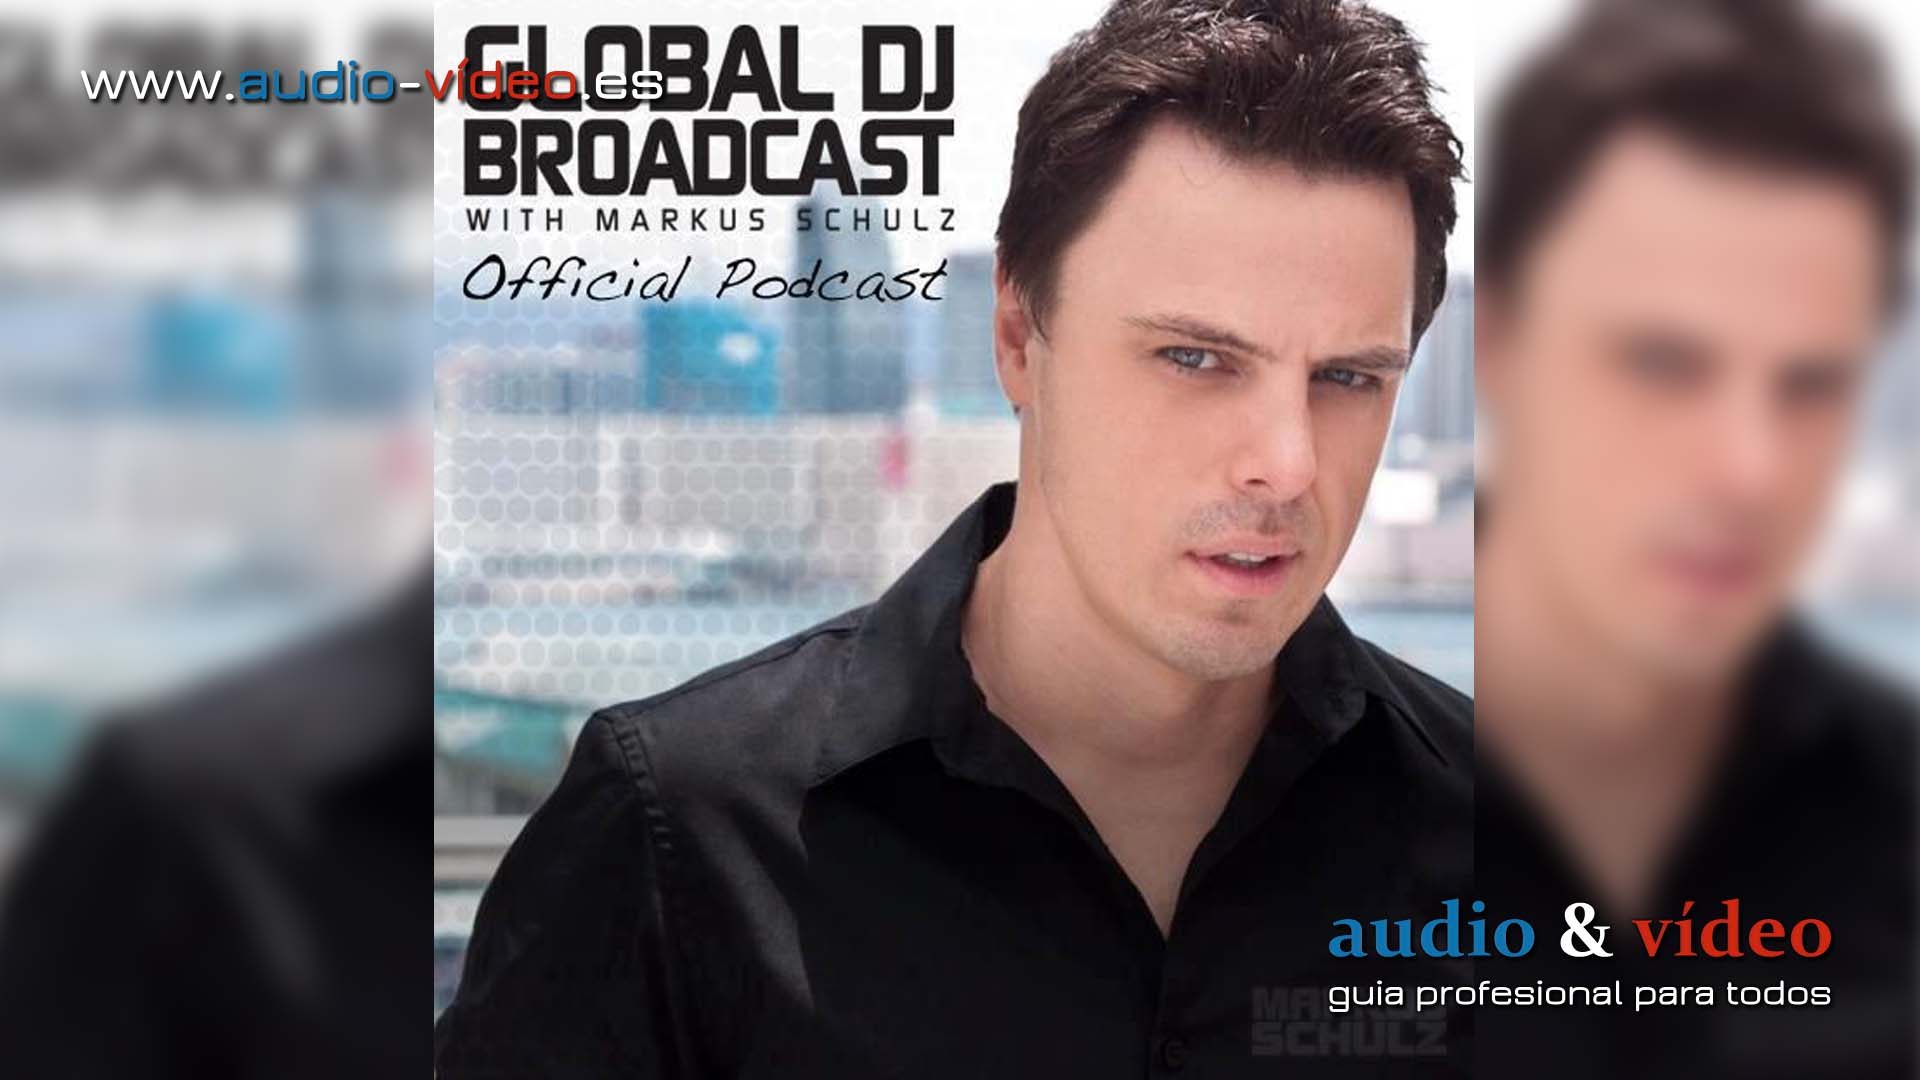 Global DJ Broadcast – Mar 19 2015